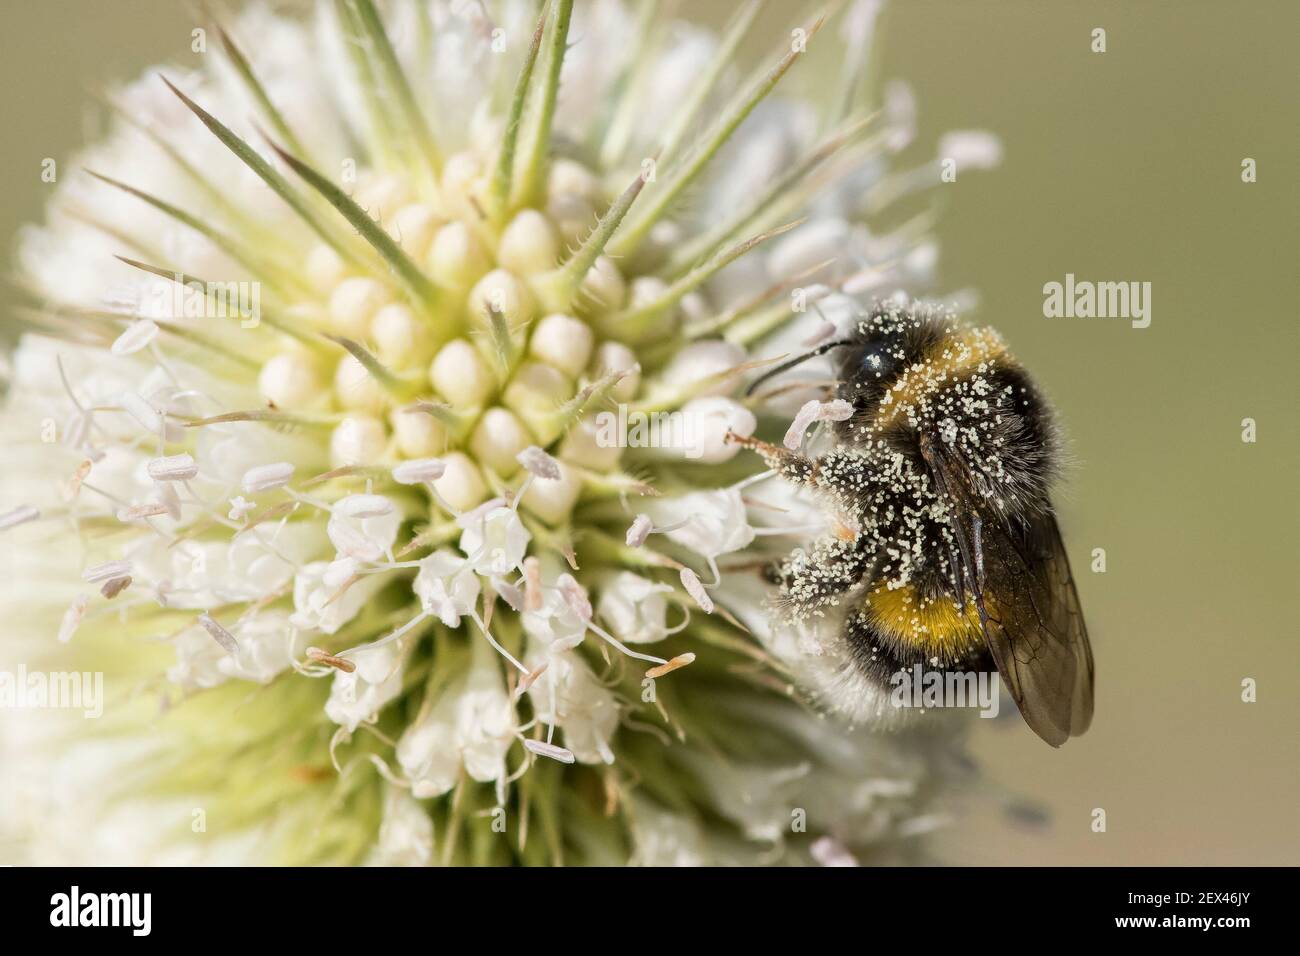 Bumblebee (Bombus terrestris) recouvert de pollen sur des petites fleurs coupées (Dipsacus laciniatus), jardin des plantes, Paris, France Banque D'Images